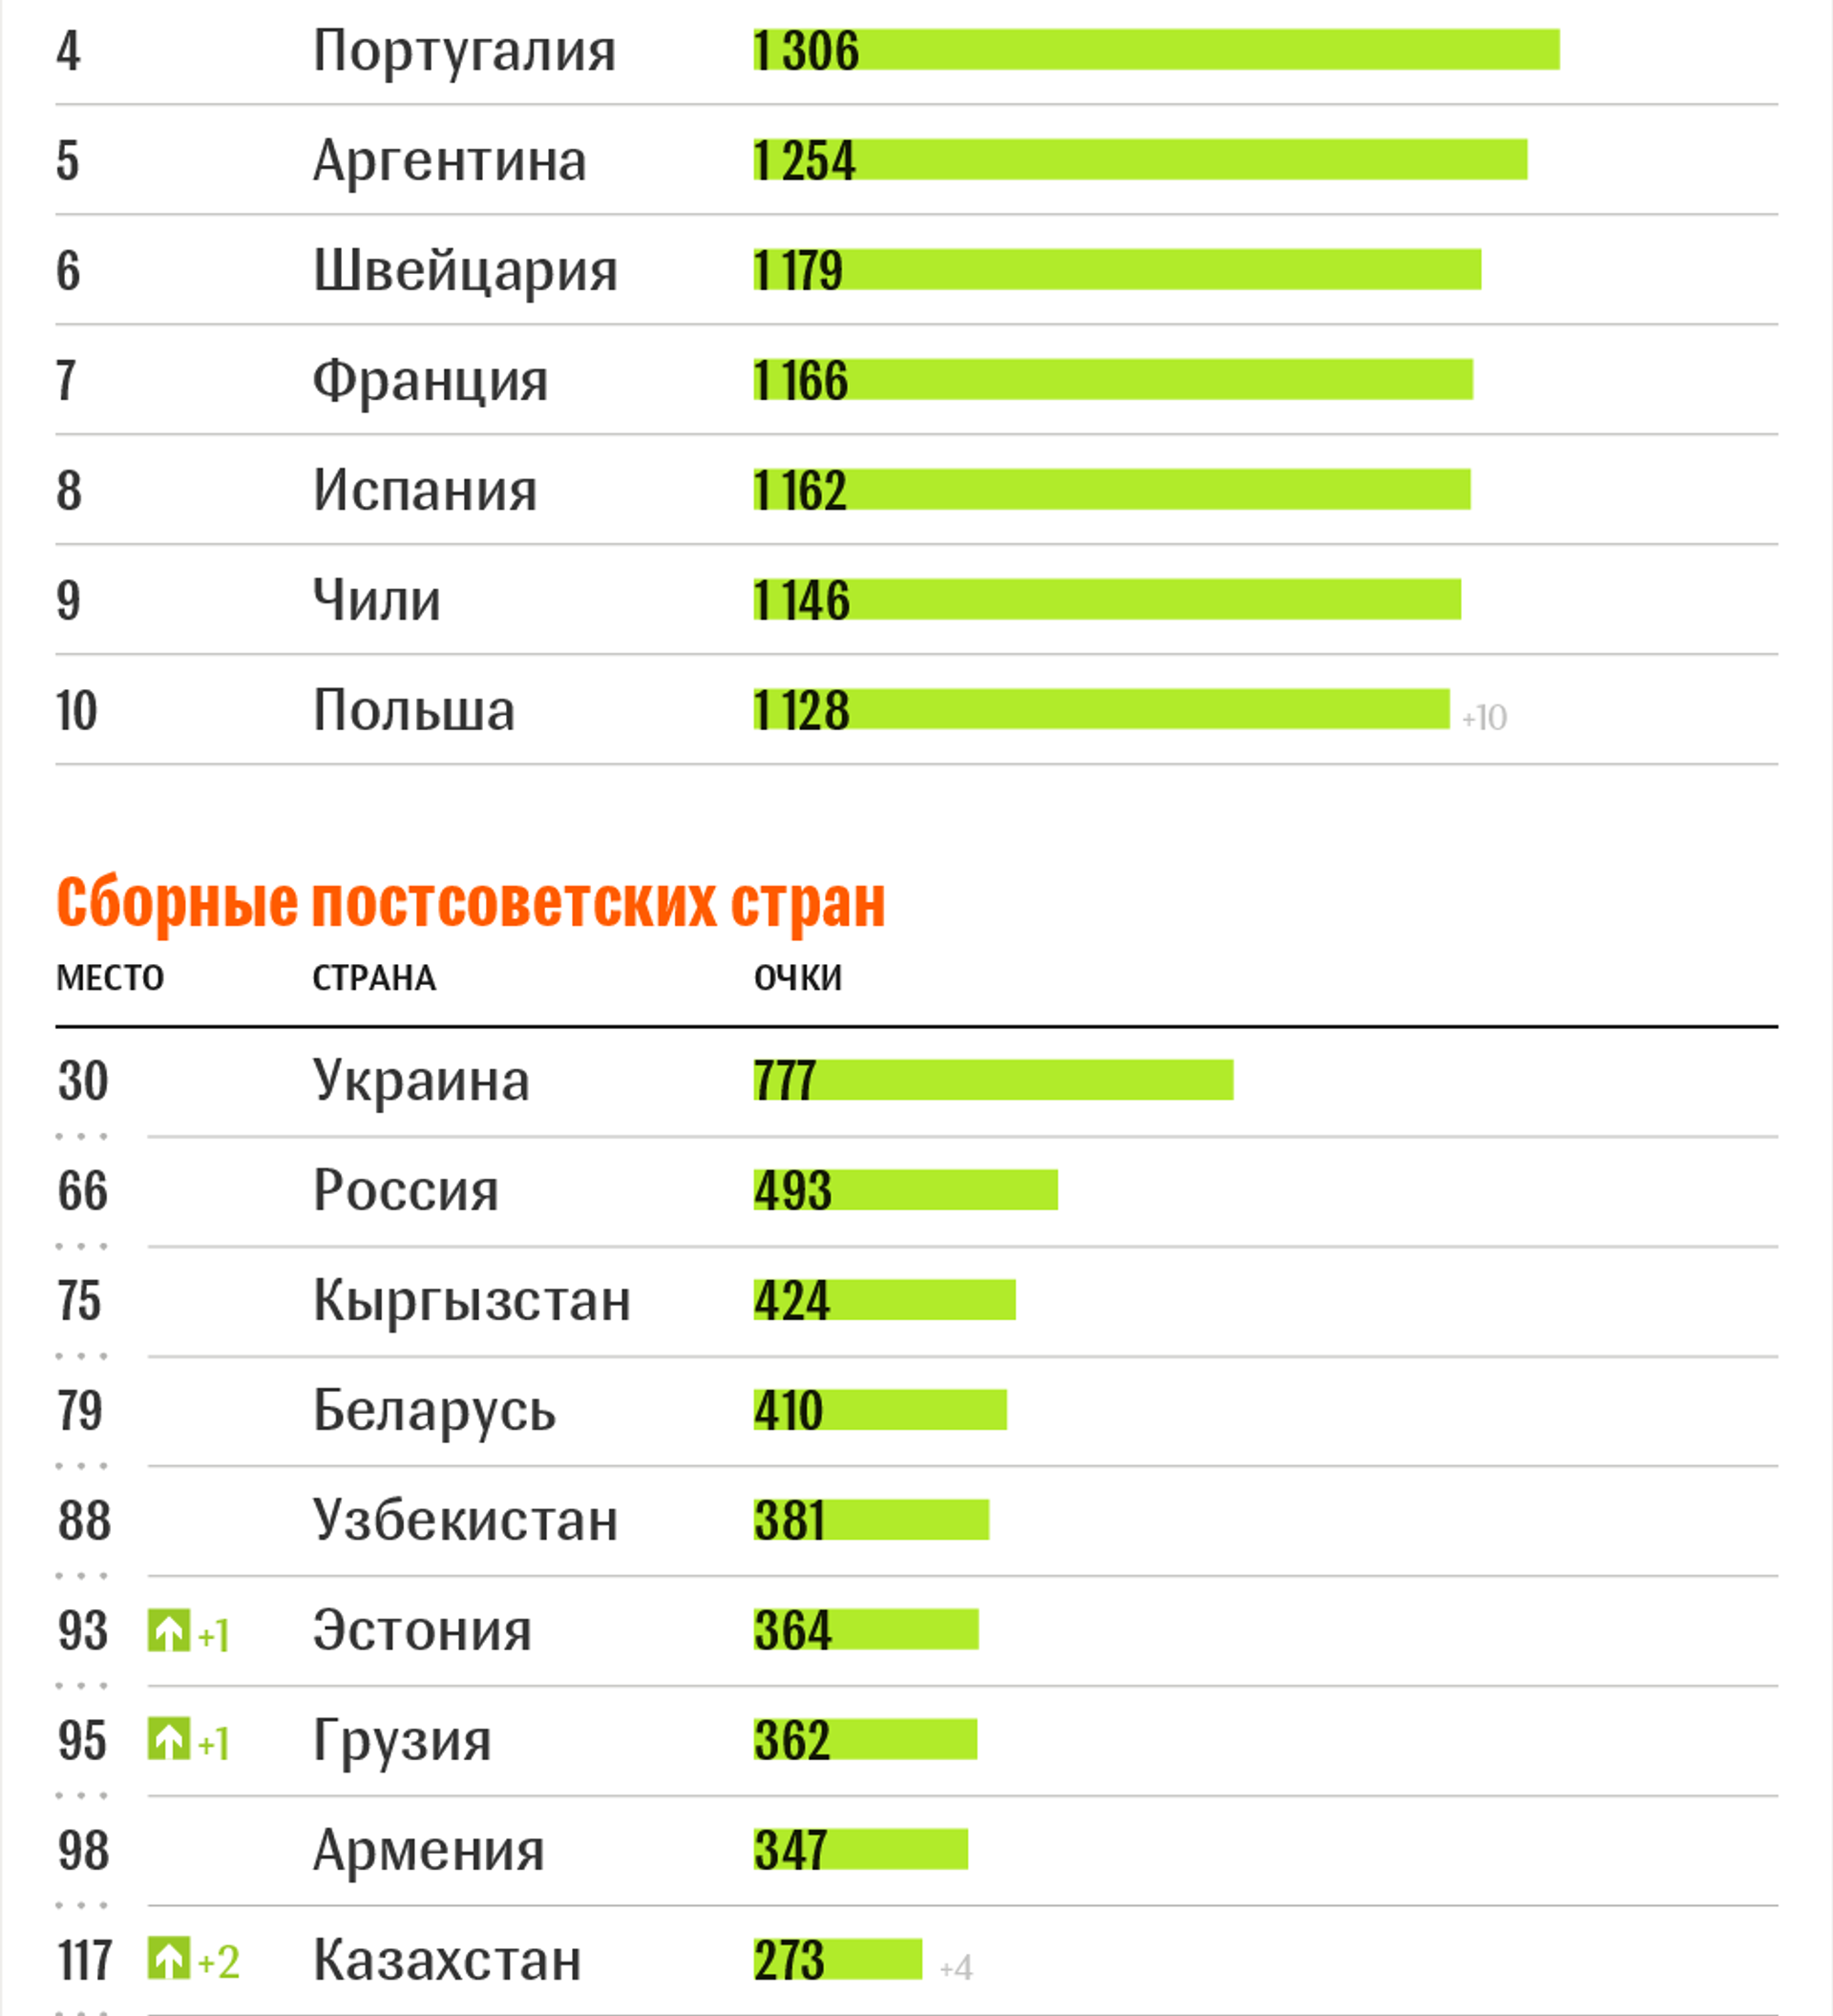 Футбол рейтинг сборных фифа на сегодня таблица. Таблица самых сильных стран по футболу. Рейтинг ФИФА. Мировой футбольный рейтинг.